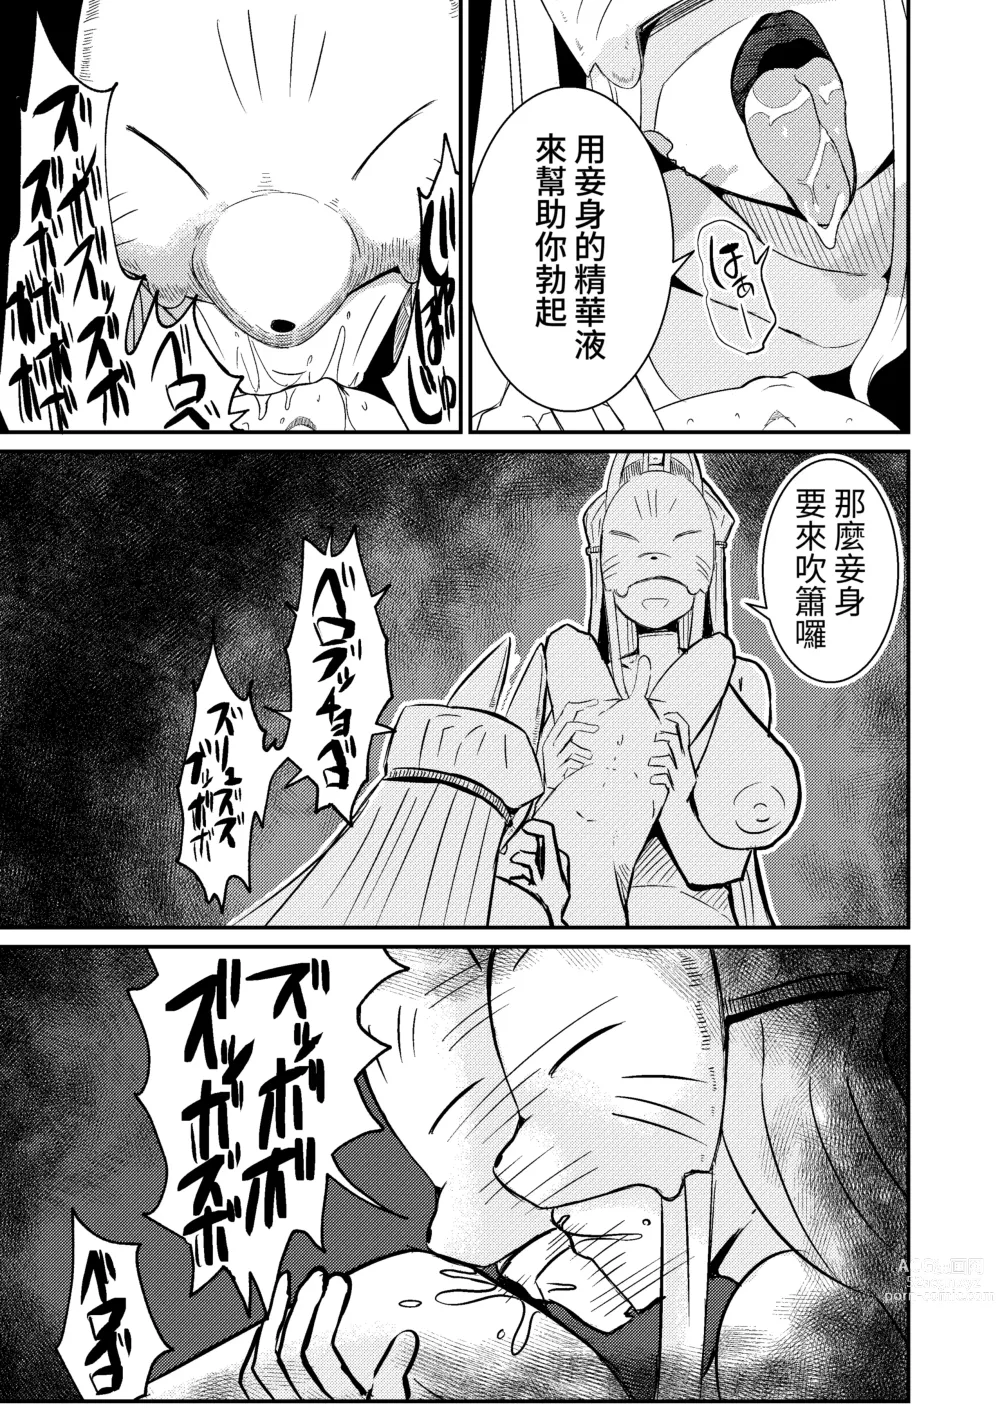 Page 23 of doujinshi Fuuin Hodoitara Damasare Tsukarete Shibo Shirage Jinsei Konna Kotonara Tokanakya Yokatta